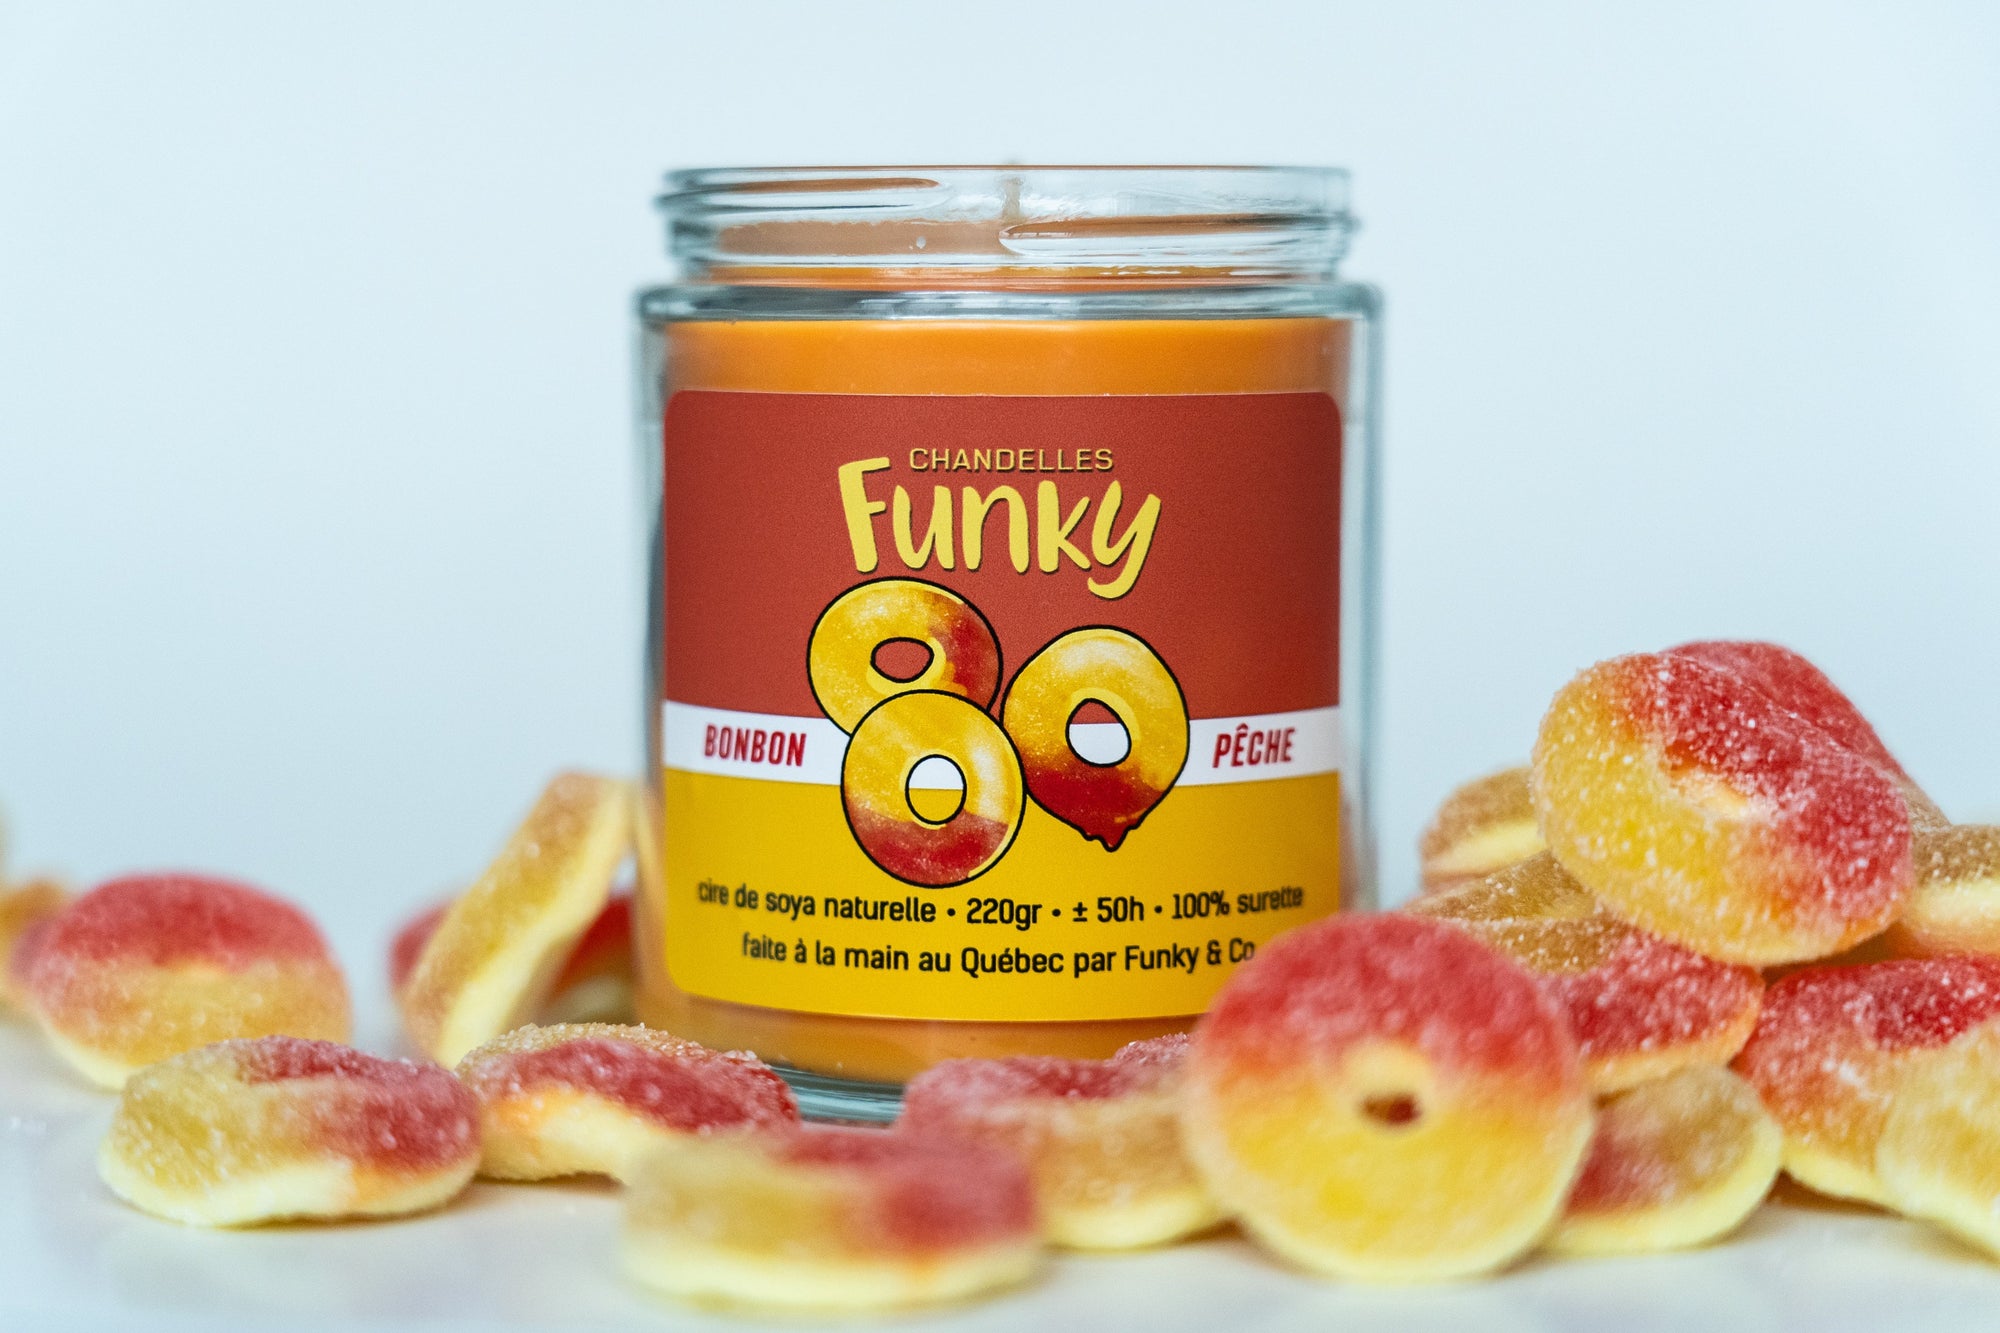 Chandelle Bonbon pêche - Funky - Funky & Co.